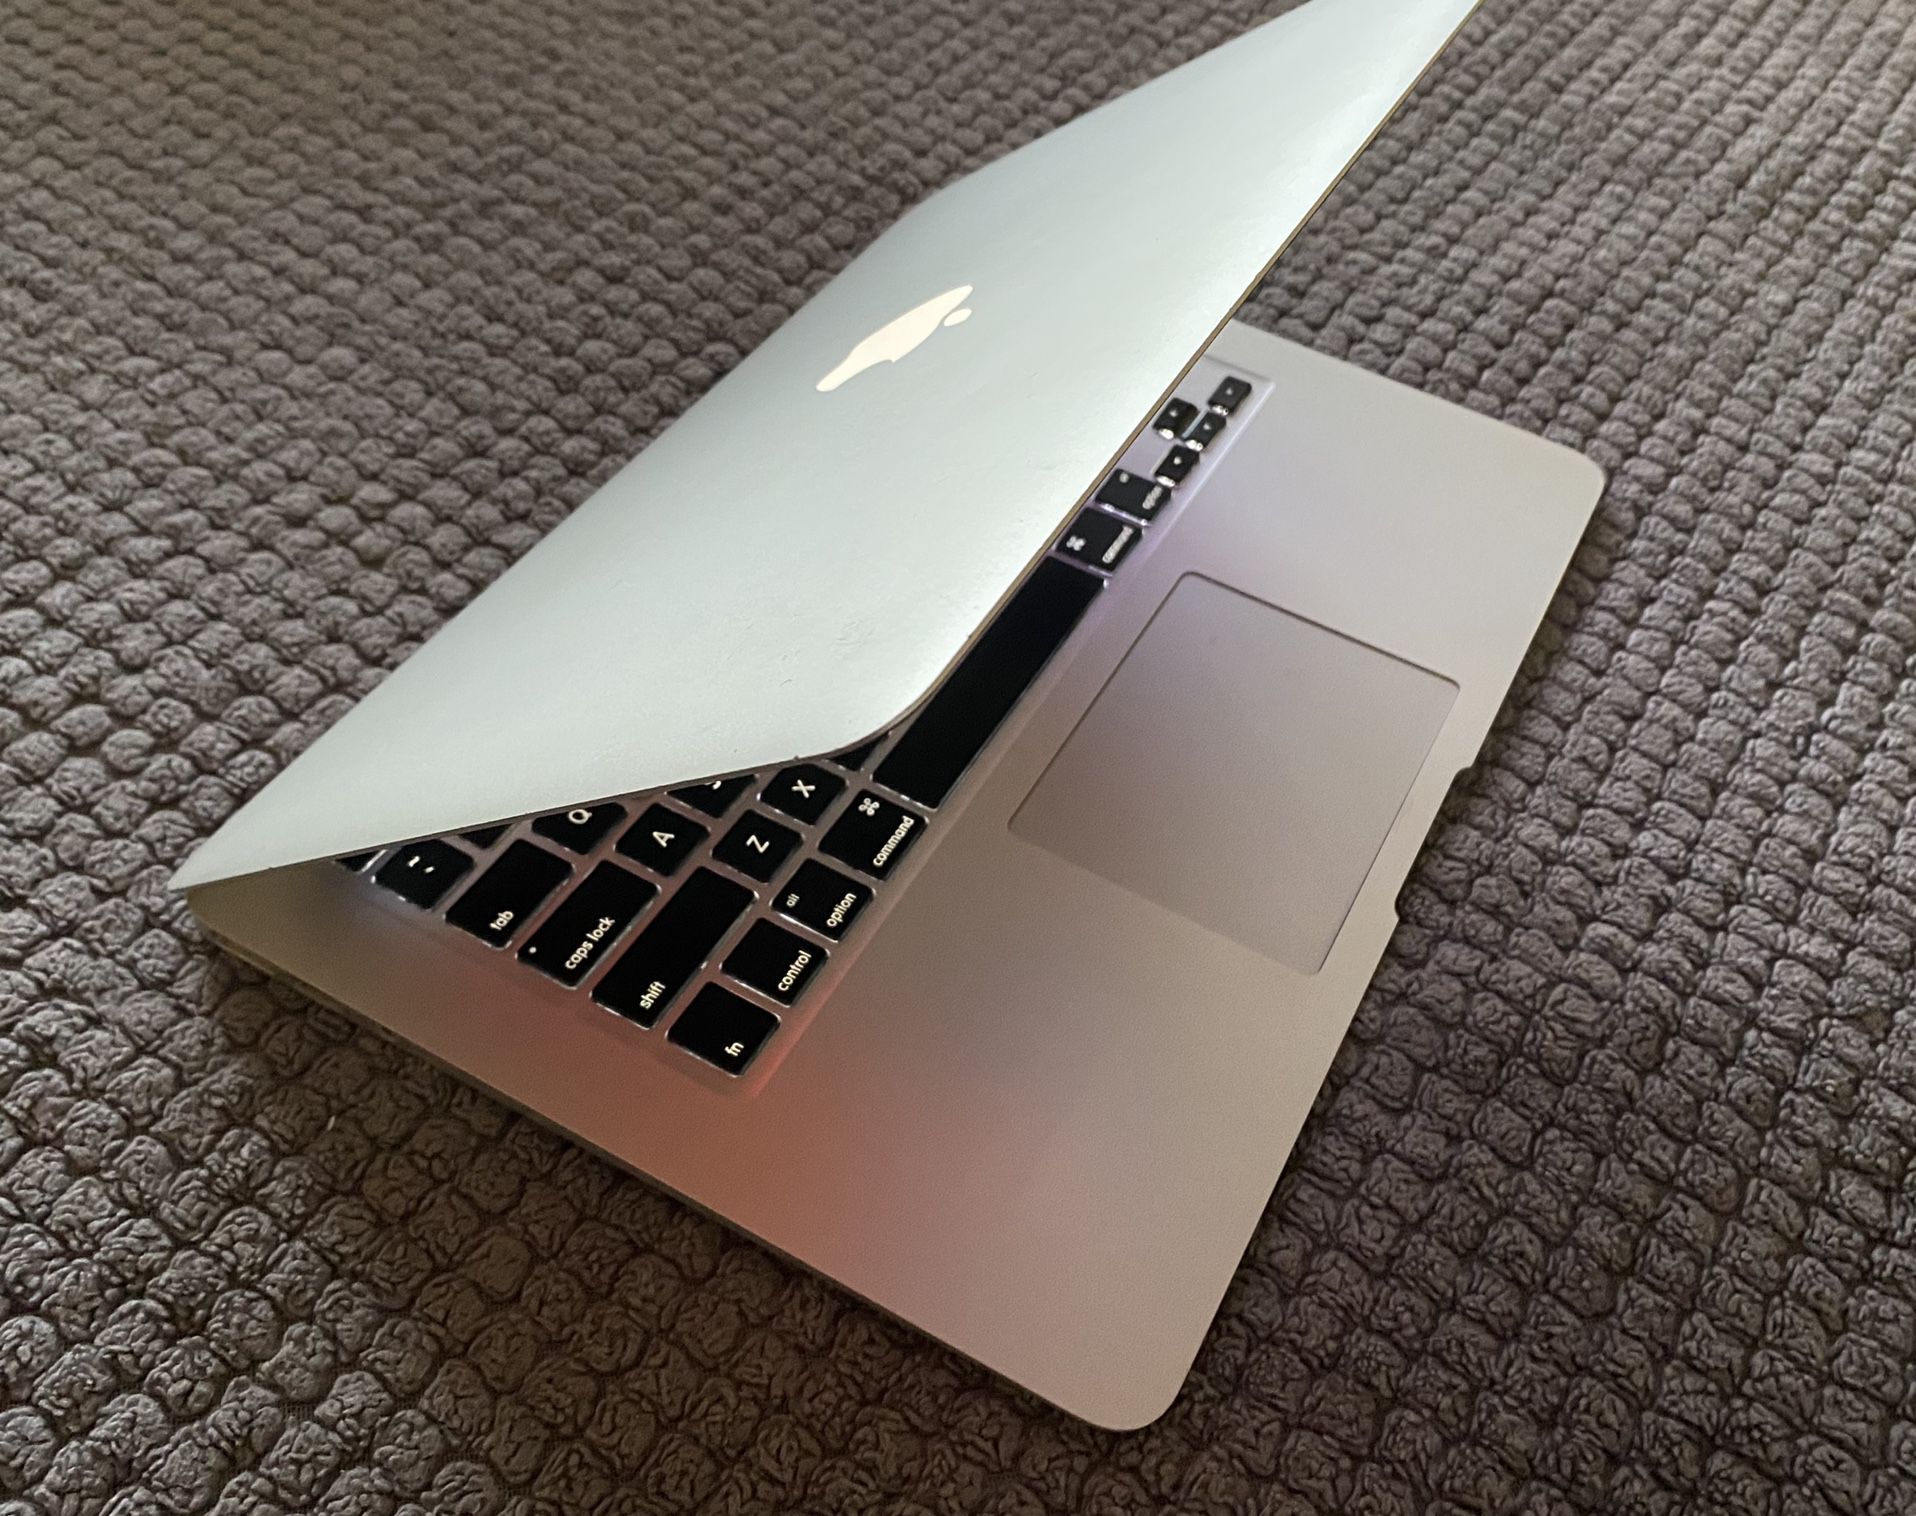 2013 MacBook Air 13”